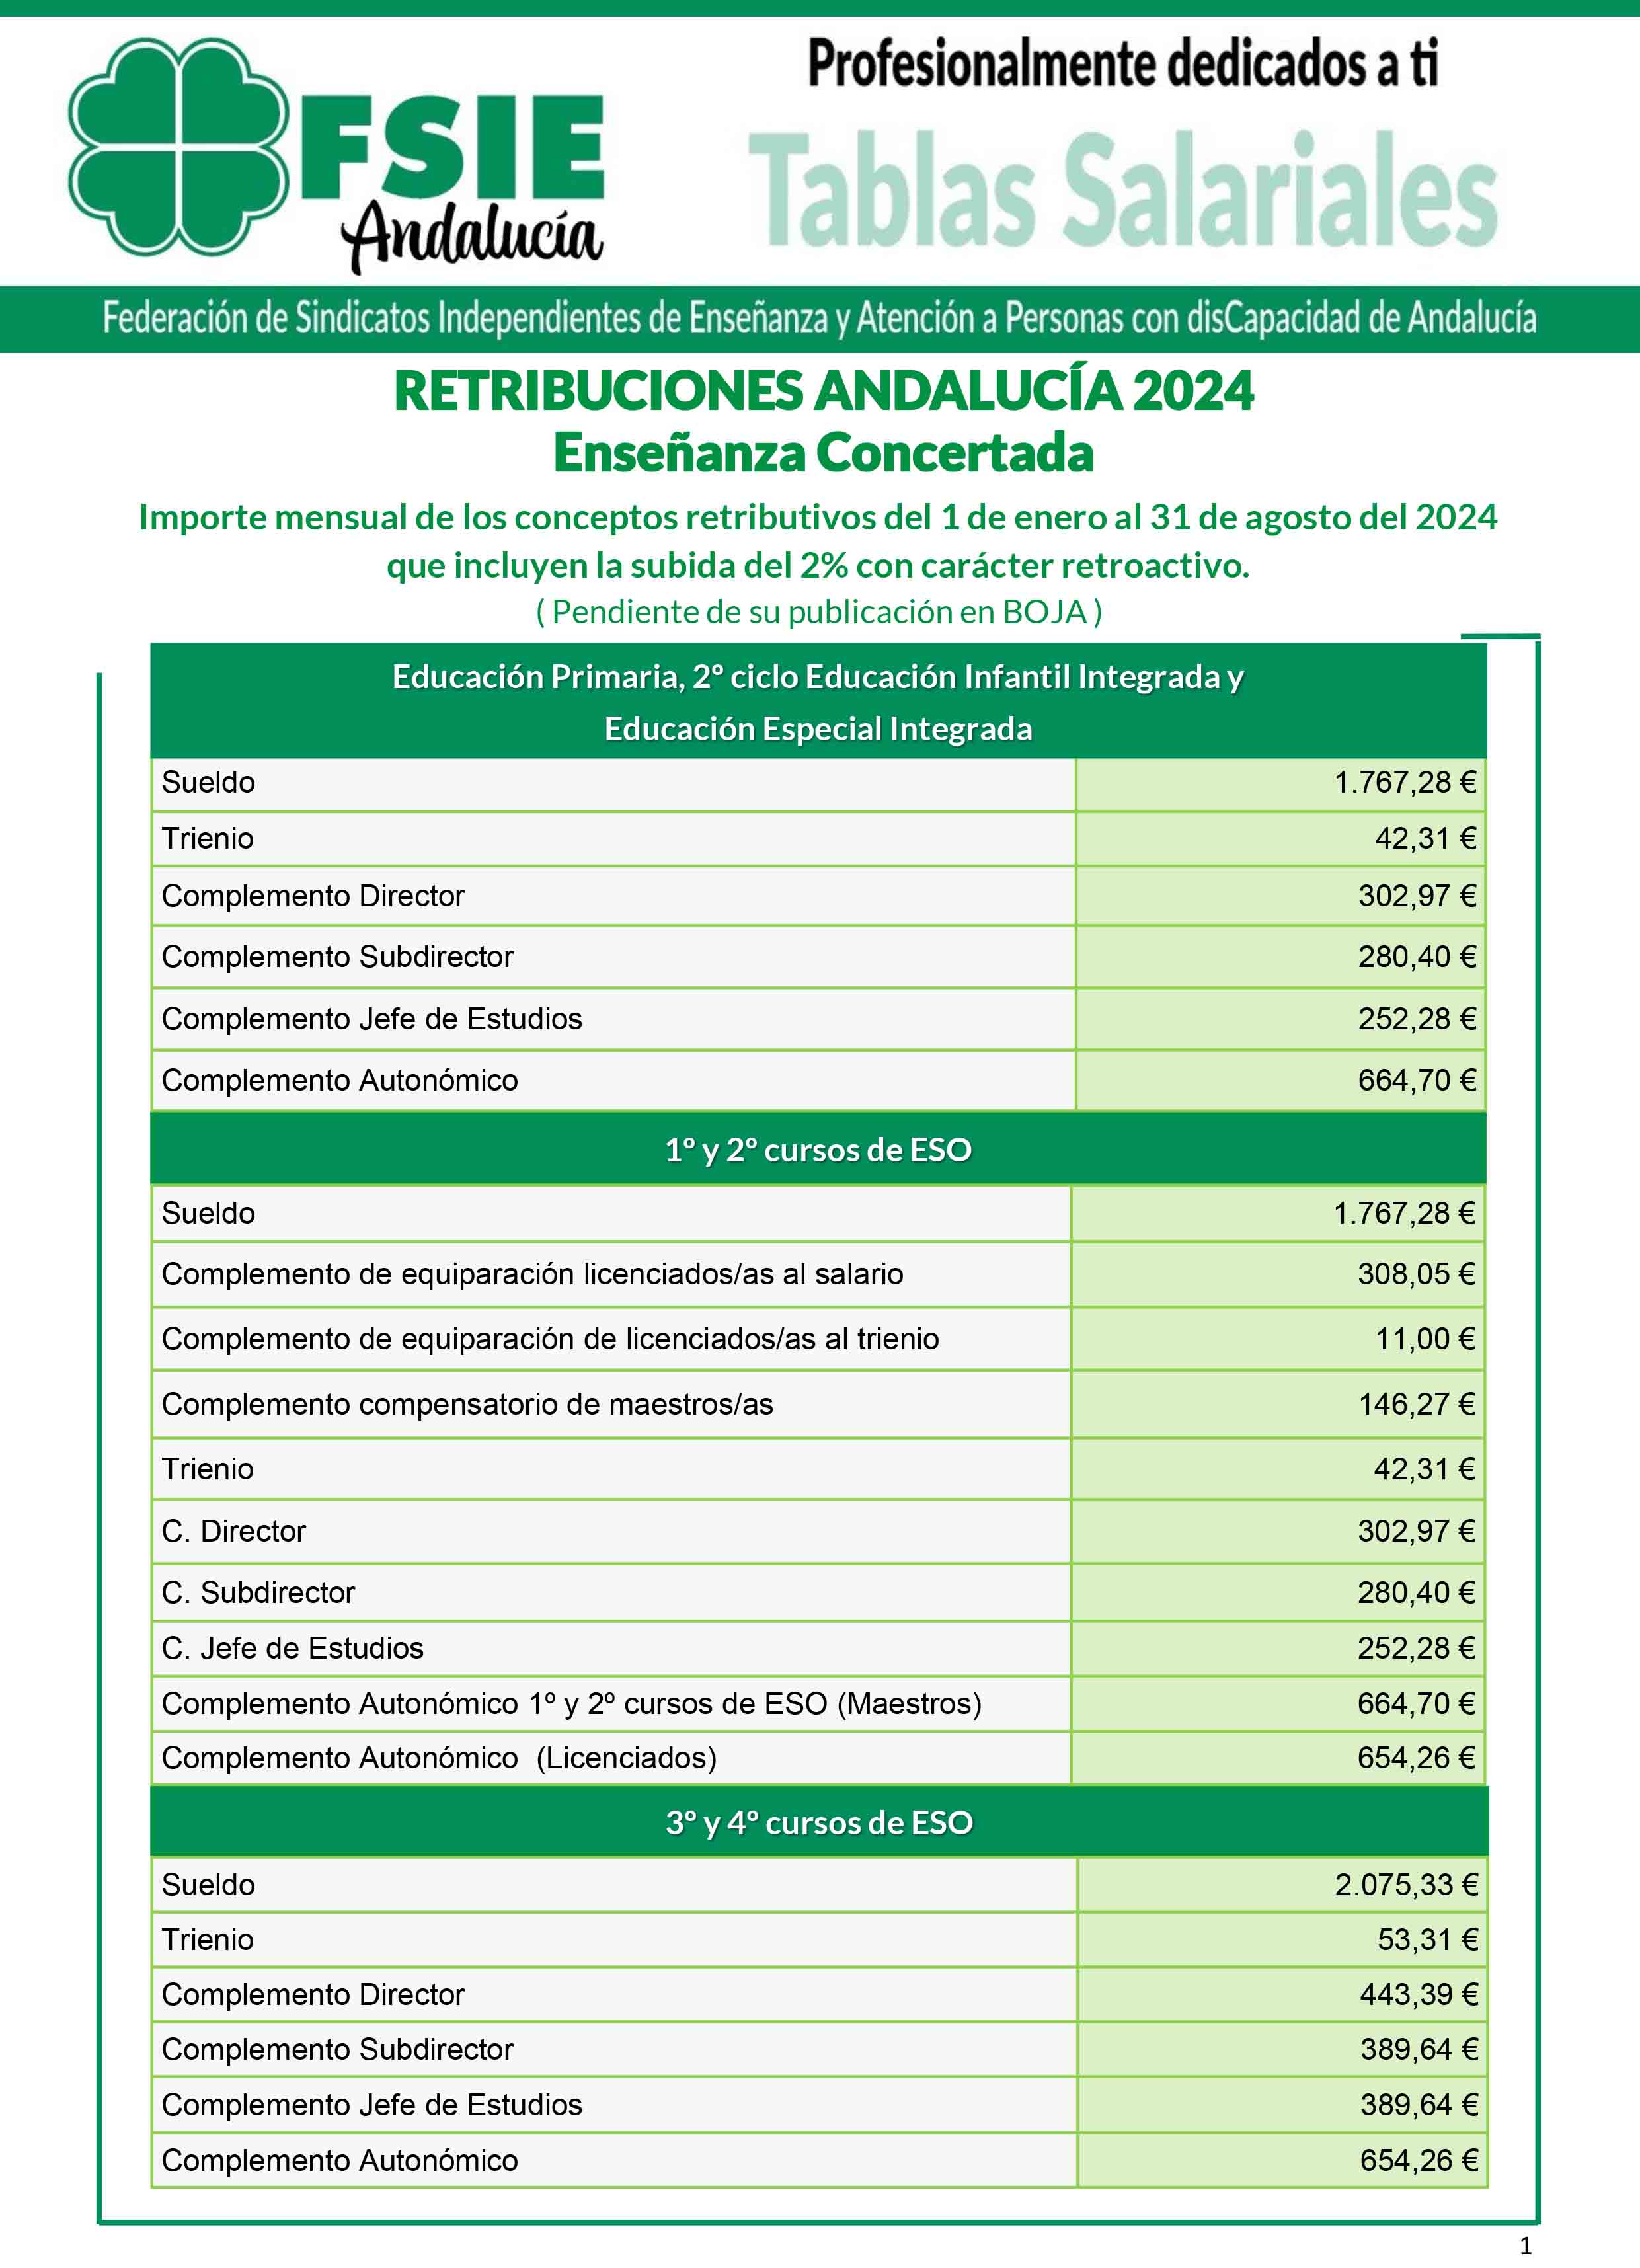 RetribucionesSalariales E concertada retroactivo enero 2024 agsoto 2024 2porciento